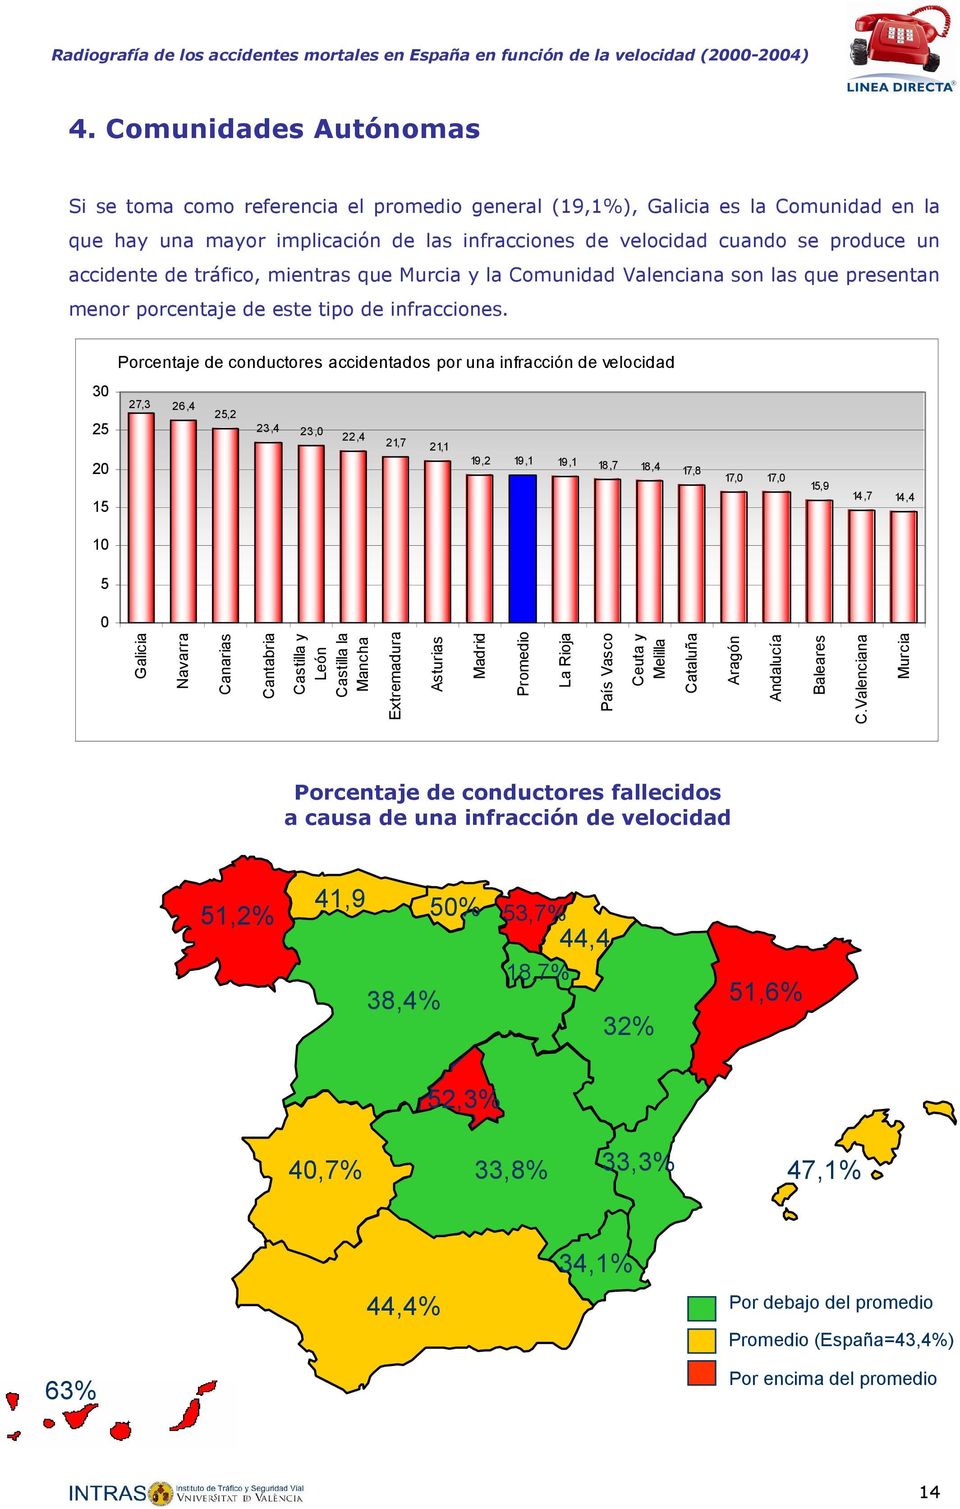 Porcentaje de conductores accidentados por una infracción de velocidad 3 25 27,3 26,4 25,2 23,4 23, 22,4 21,7 21,1 2 15 19,2 19,1 19,1 18,7 18,4 17,8 17, 17, 15,9 14,7 14,4 1 5 Galicia Navarra